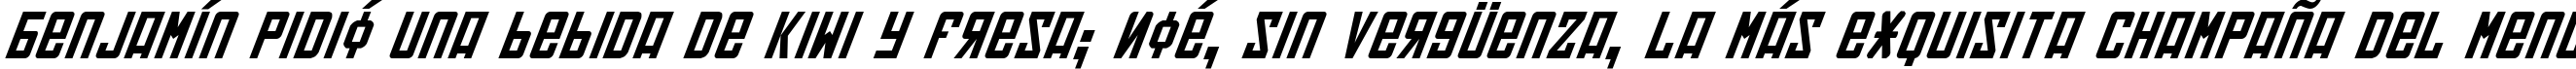 Пример написания шрифтом Soviet Italic текста на испанском